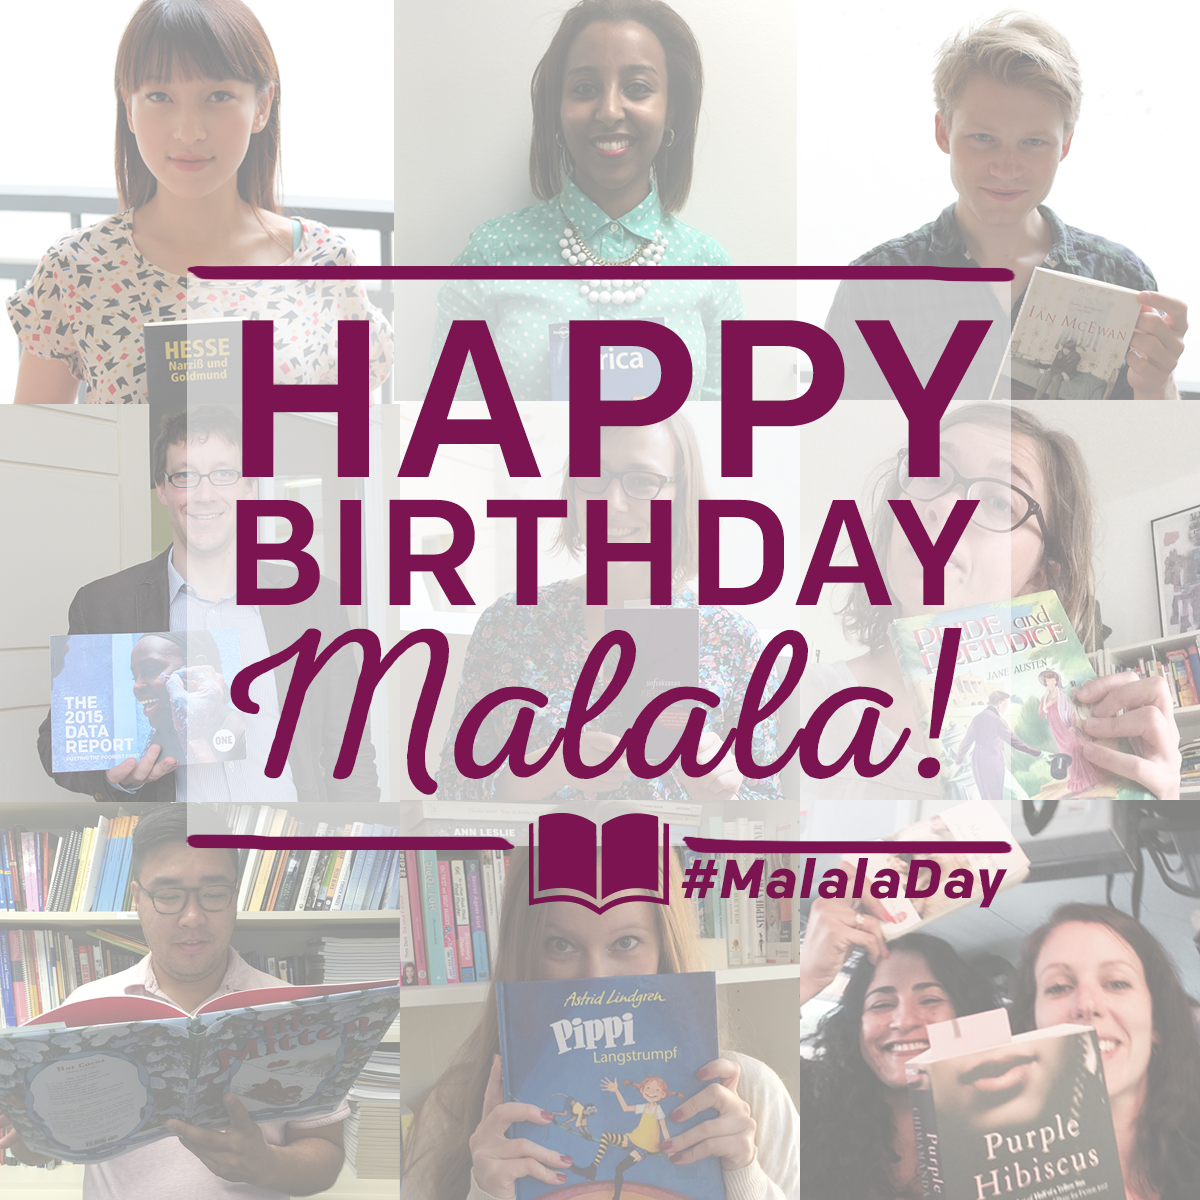 Bücher statt Kugeln: Ein Geburtstagswunsch von Malala